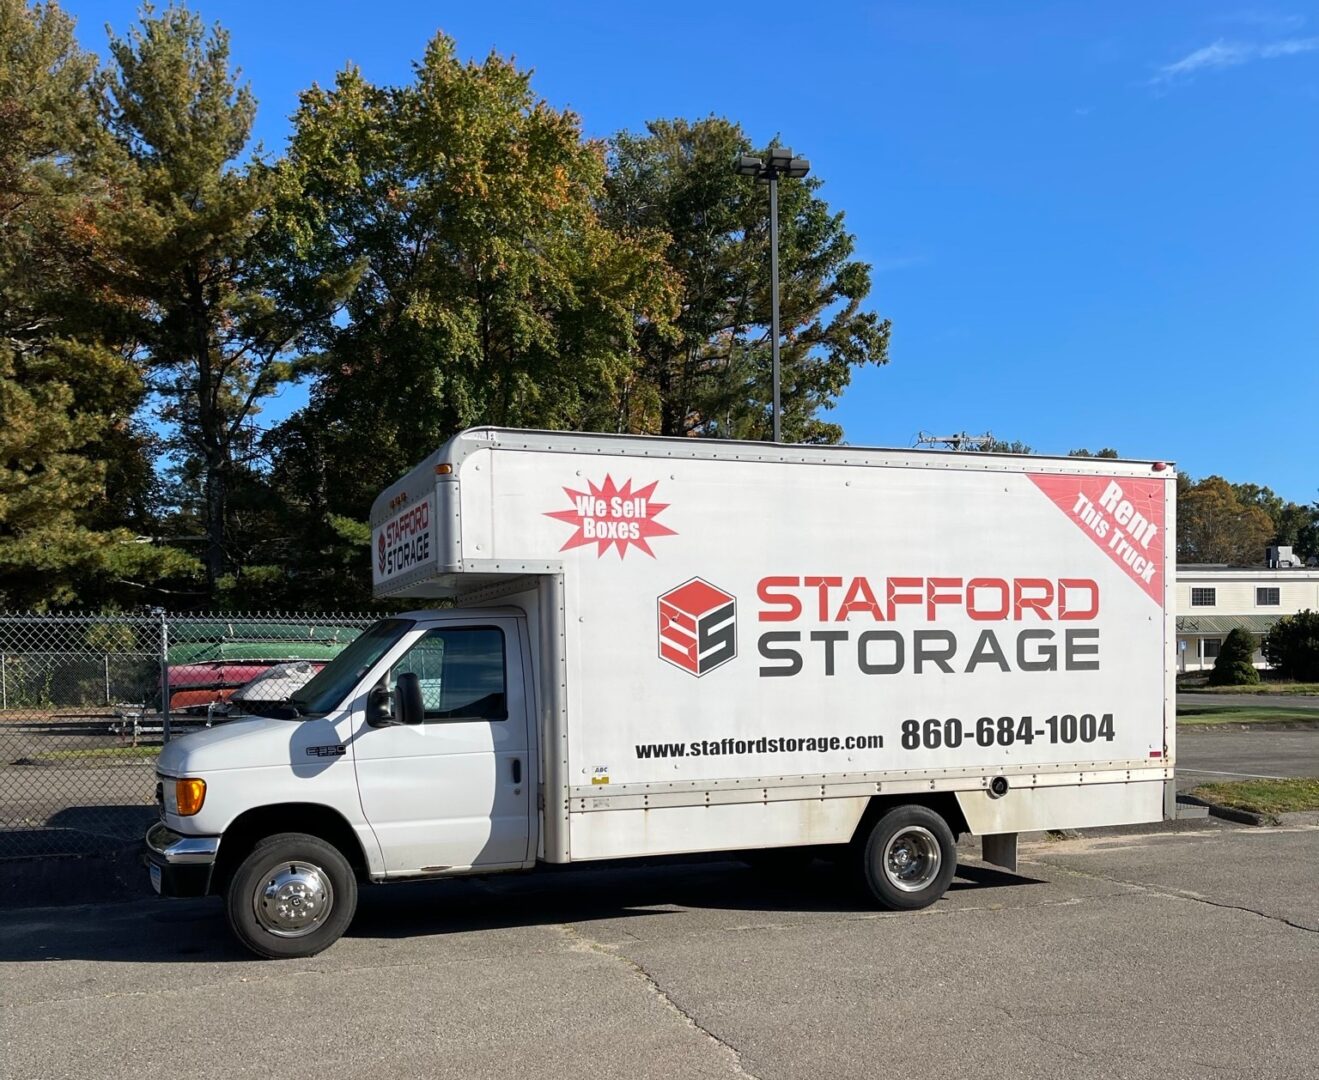 Stafford Storage